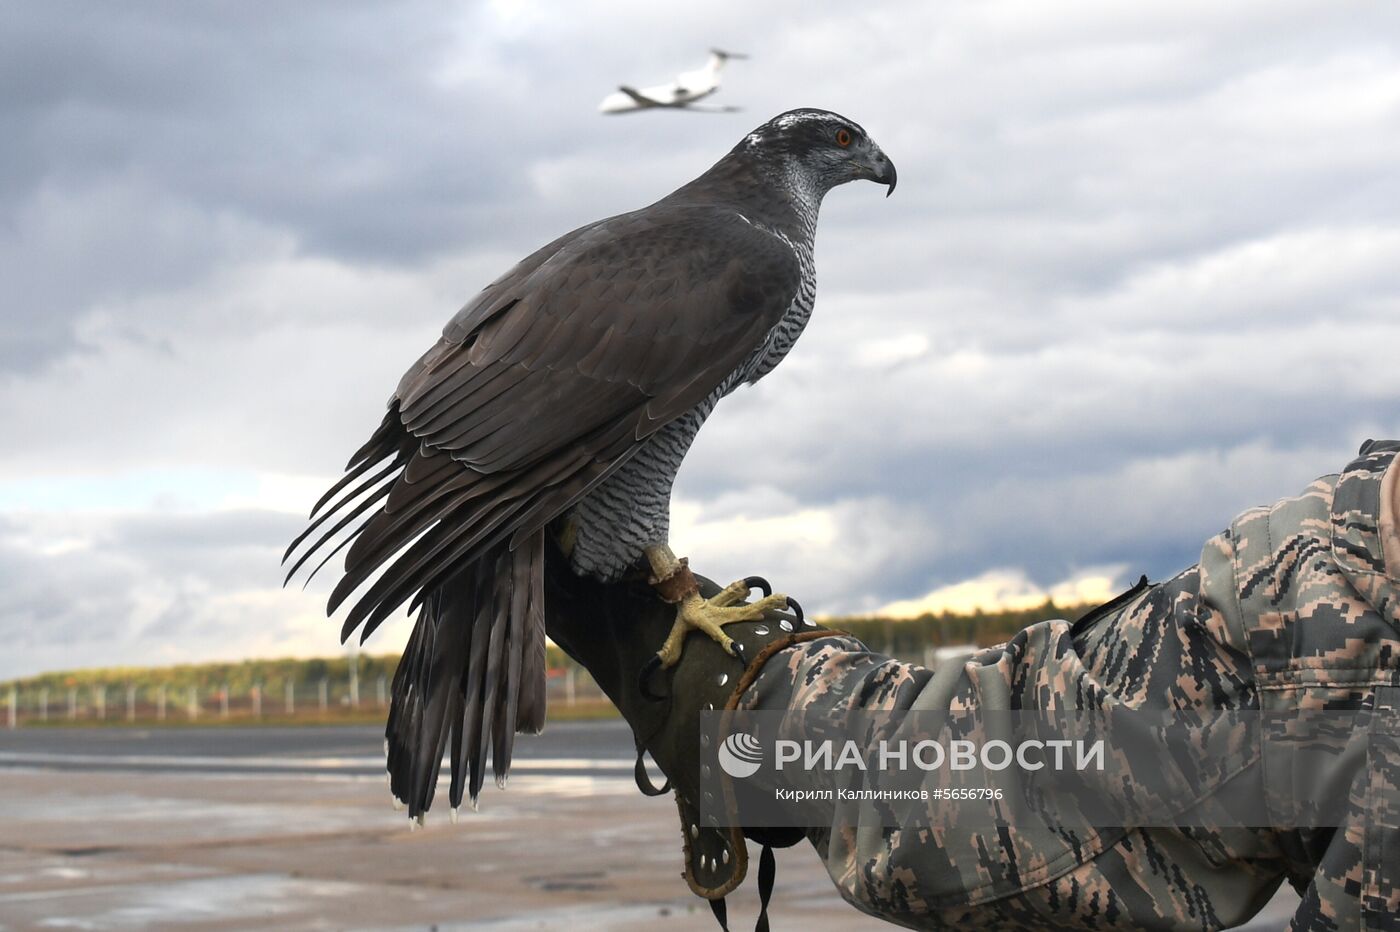 Орнитологическая служба аэропорта "Домодедово"